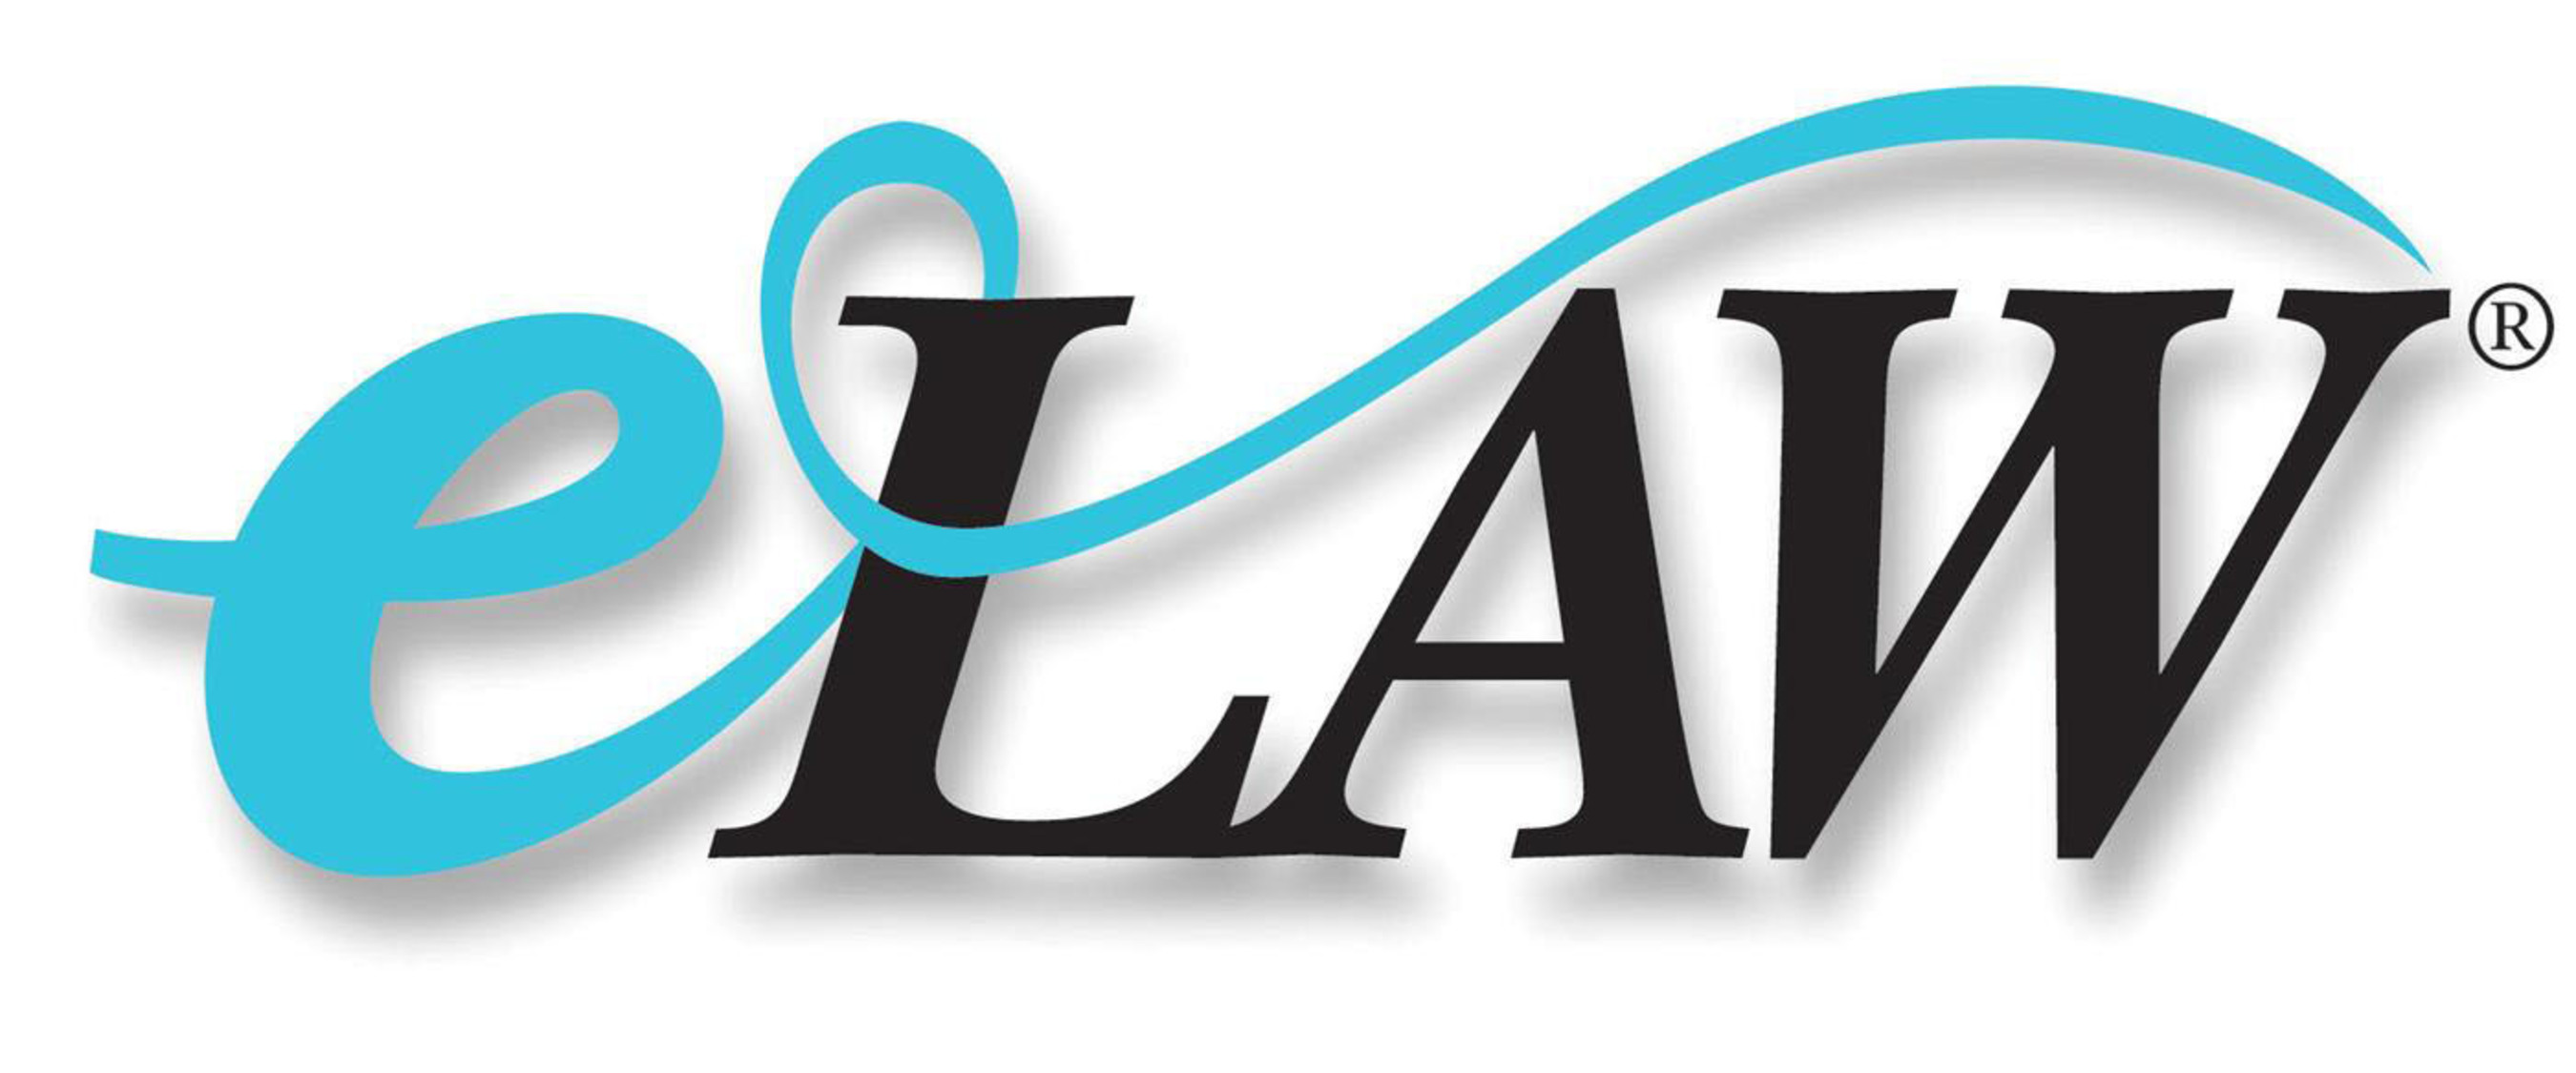 eLaw logo. (PRNewsFoto/eLaw) (PRNewsFoto/ELAW)